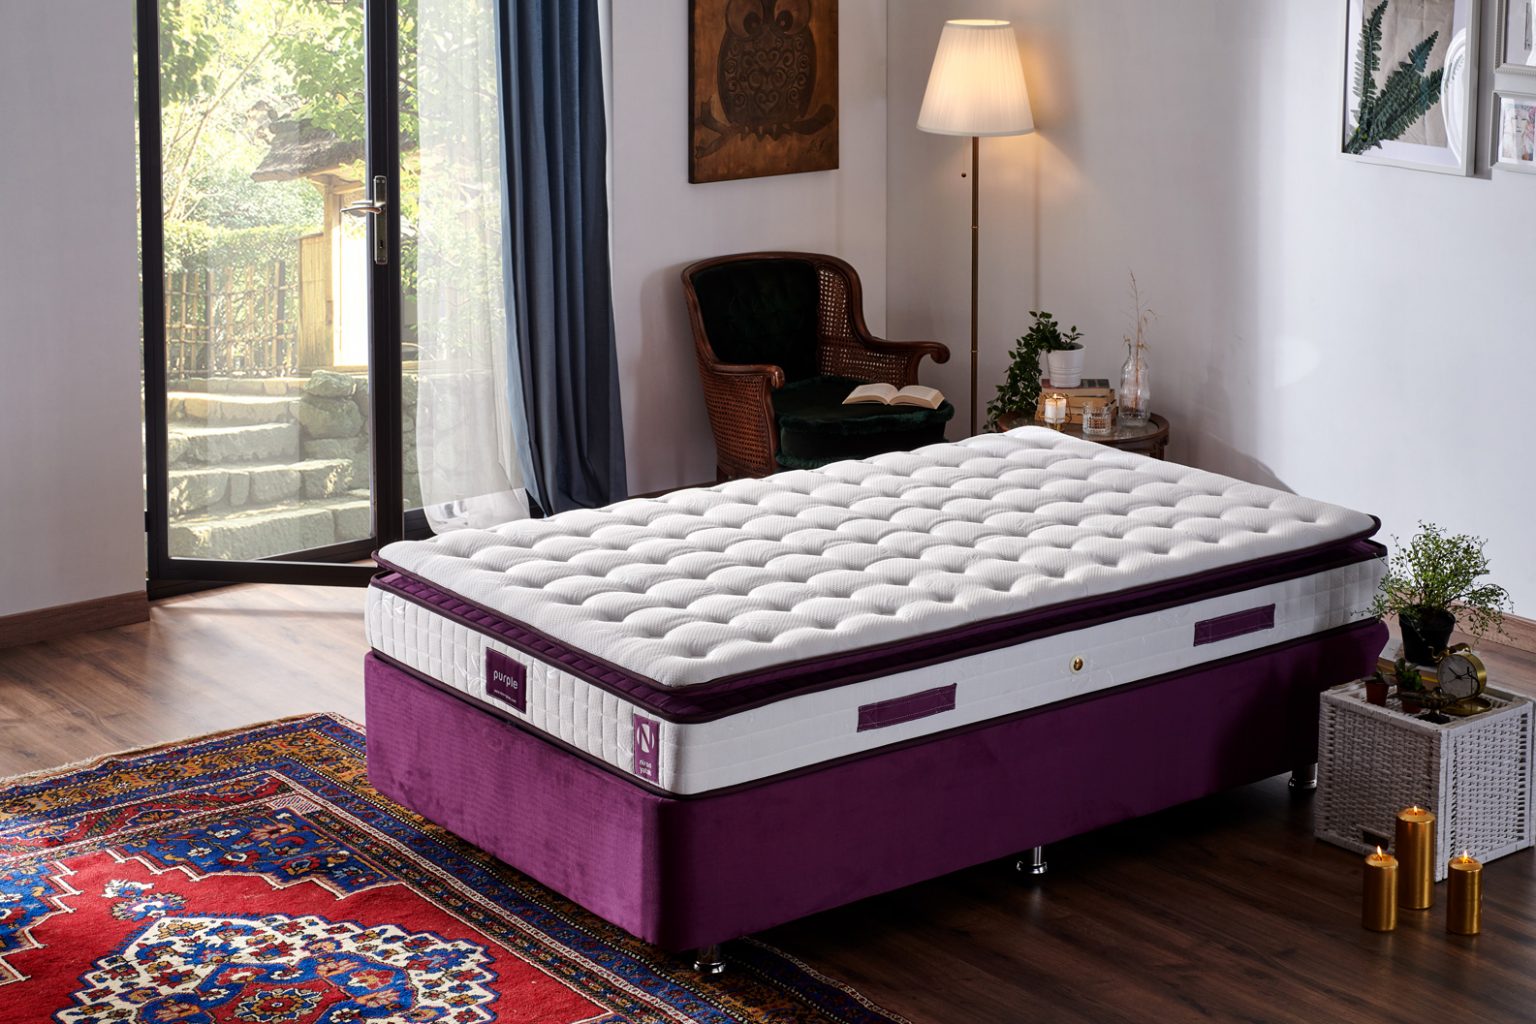 120×200 cm Purple Yatak Türkiye�nin ilk ve lider yatak satış sitesi